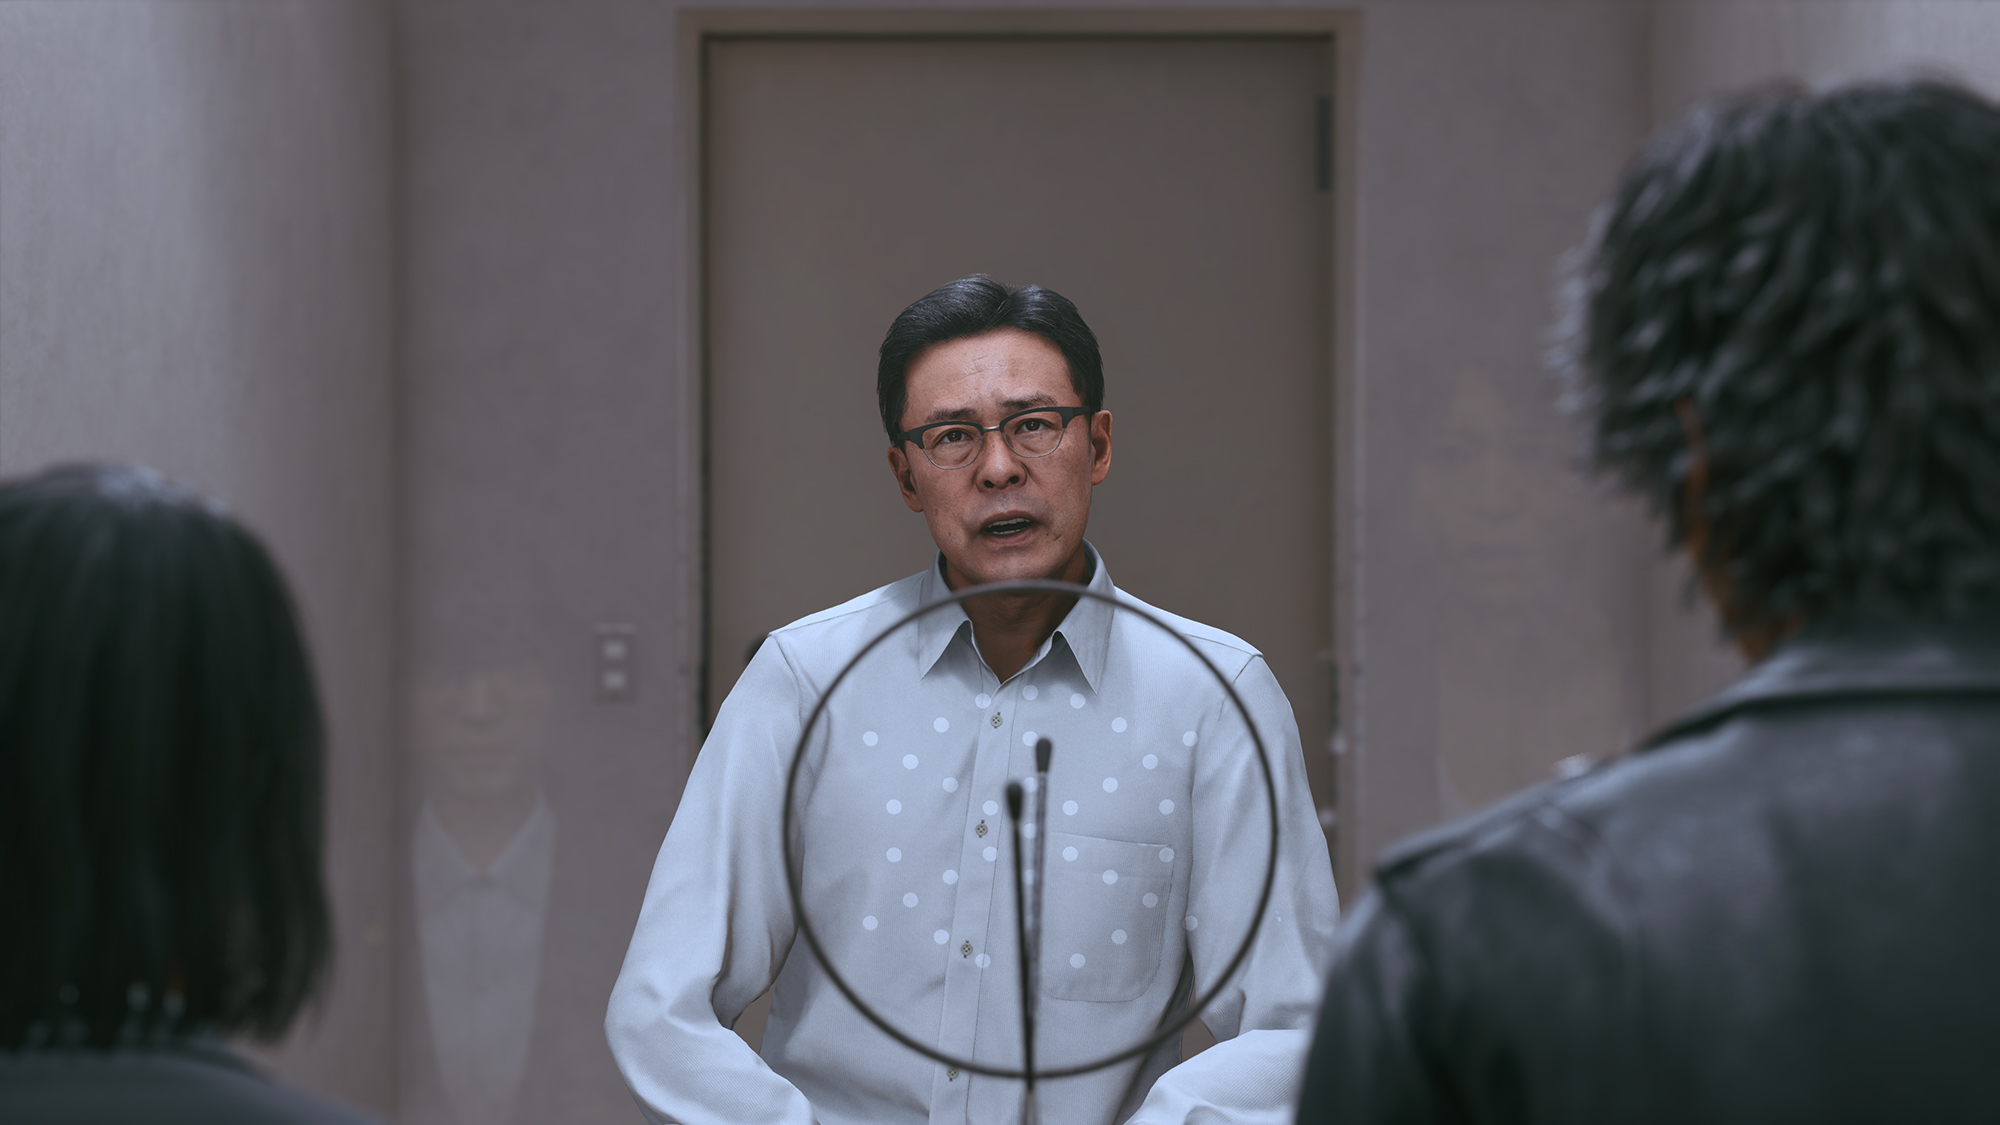 《审判之逝》玉木宏、光石研访谈影像公布 讲述角色剧情表现